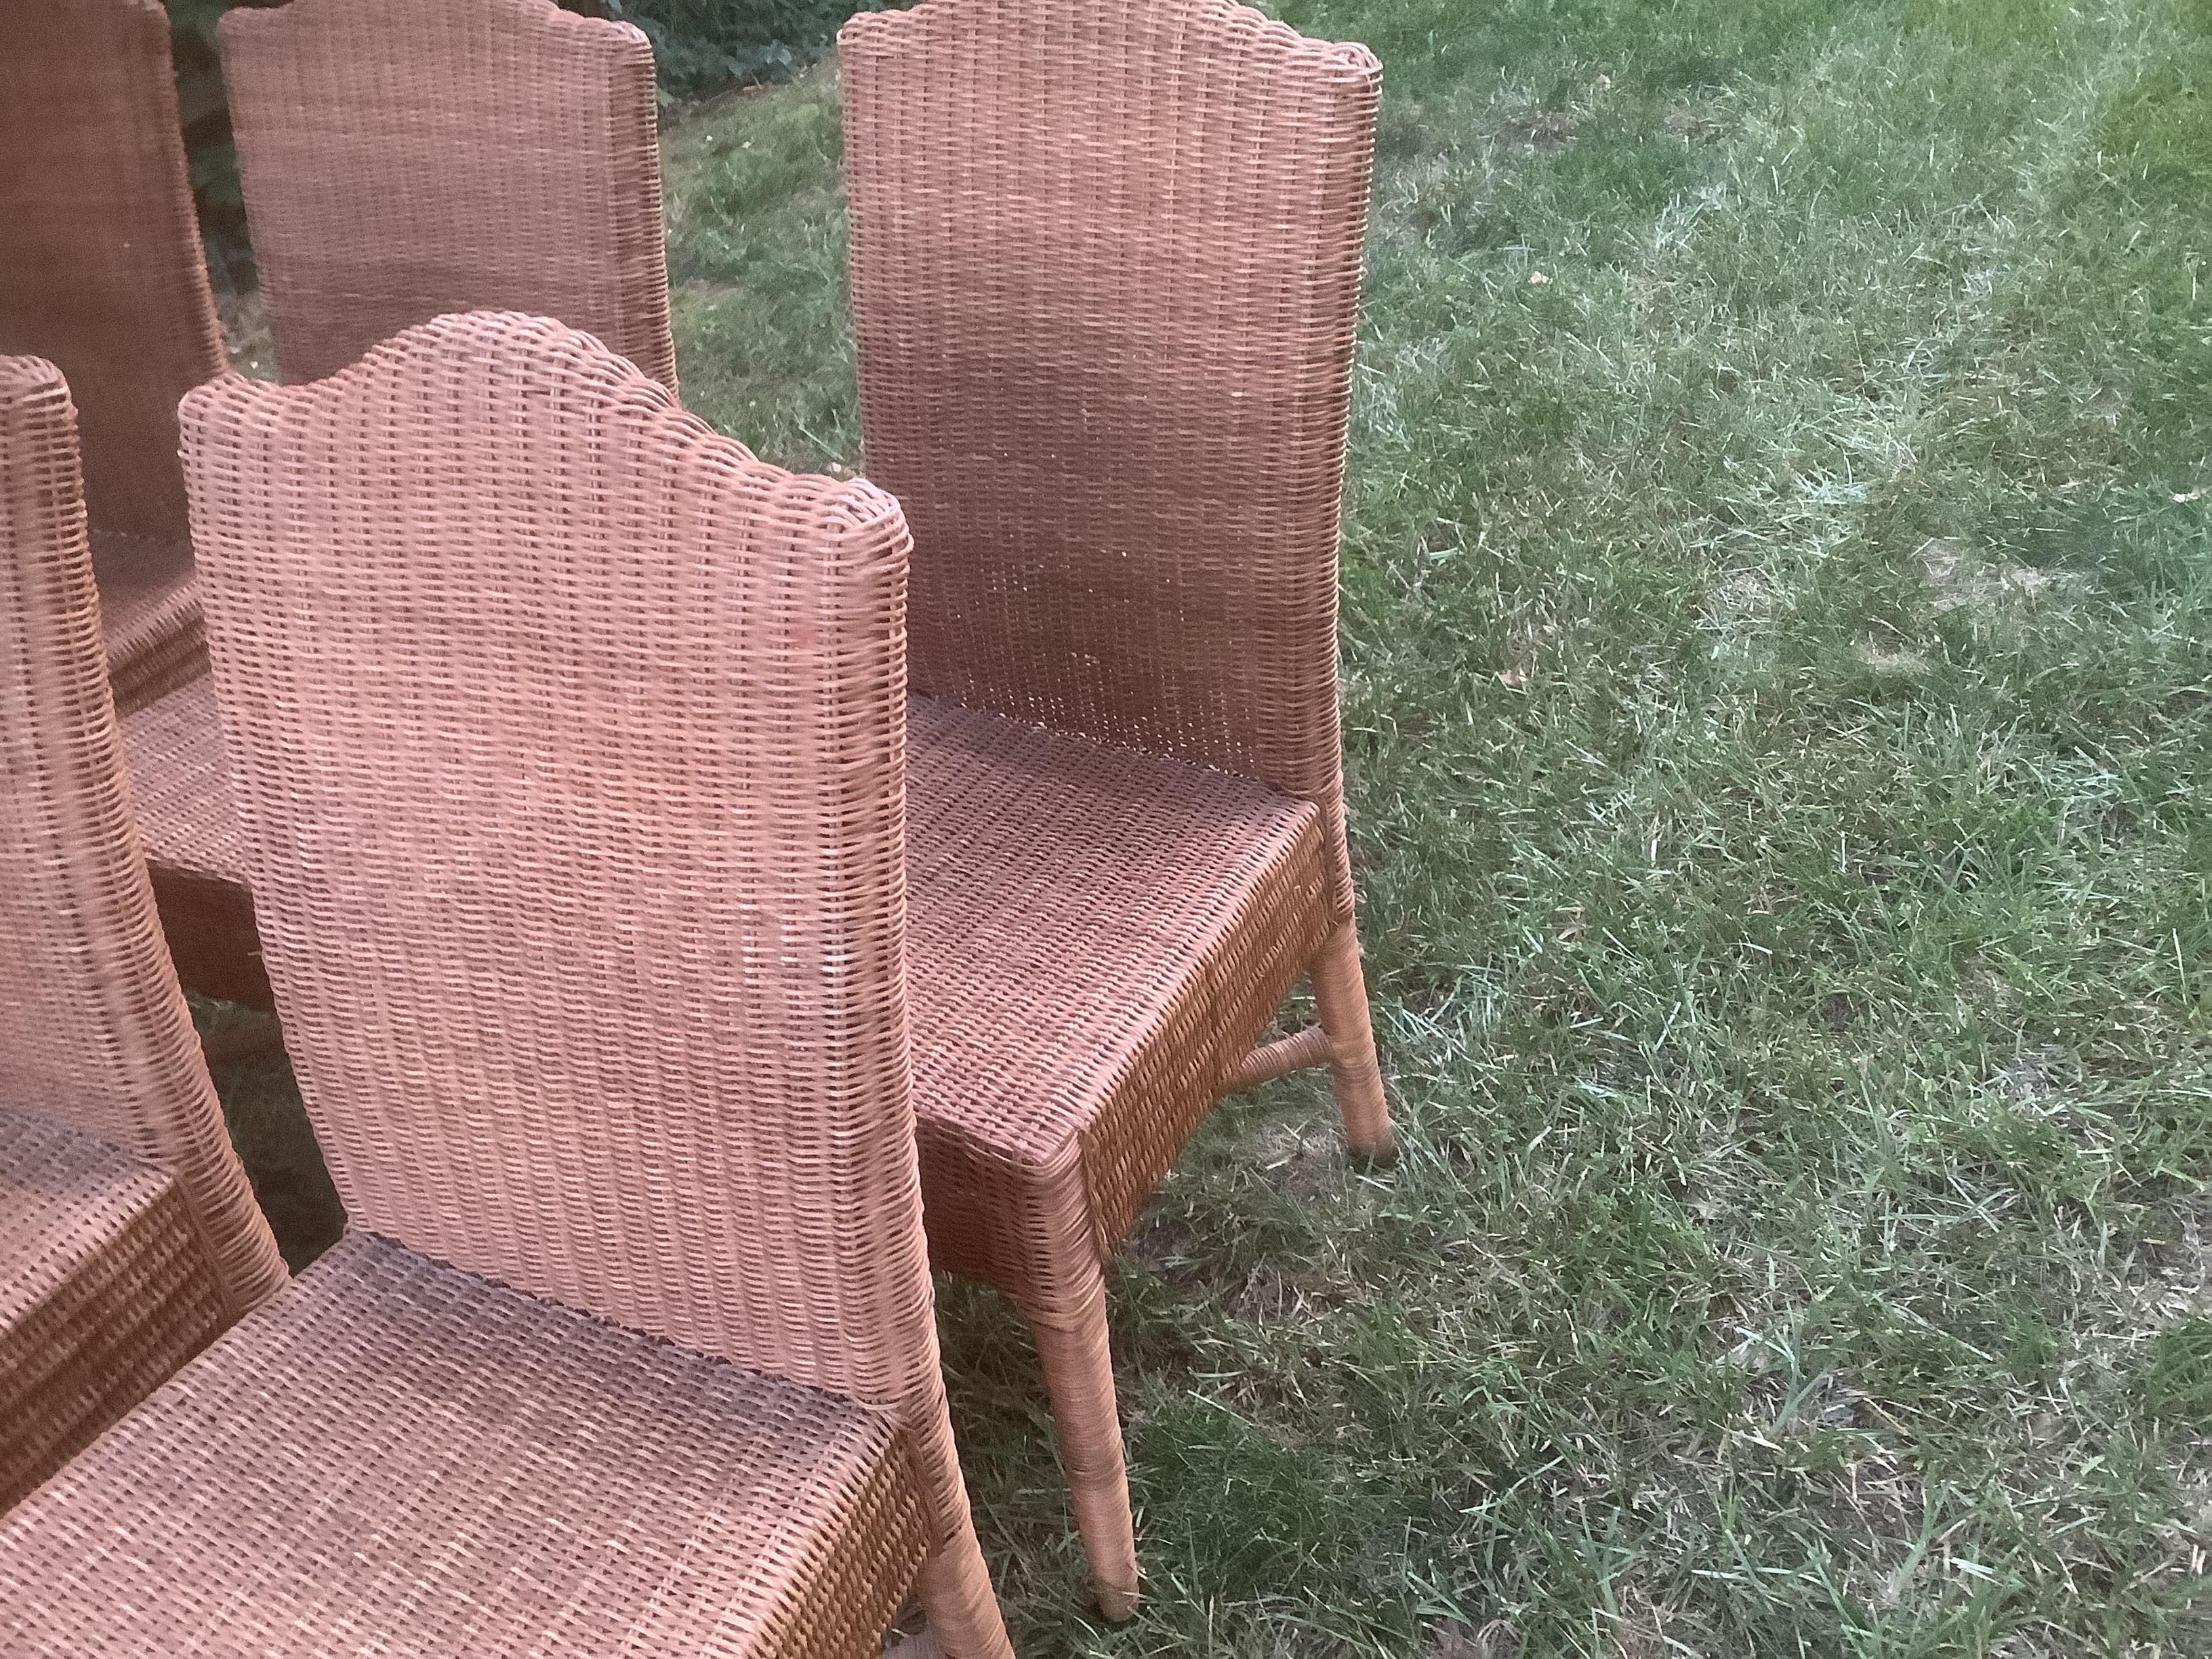 Satz von sechs Vintage Woven Dining Chairs. Sie haben eine gewölbte Rückenlehne und Querstreben an der Unterseite der Beine, die den Rahmen der Stühle fest und sicher halten. In gutem Vintage-Zustand mit kleinen Schäden am Weidengeflecht.